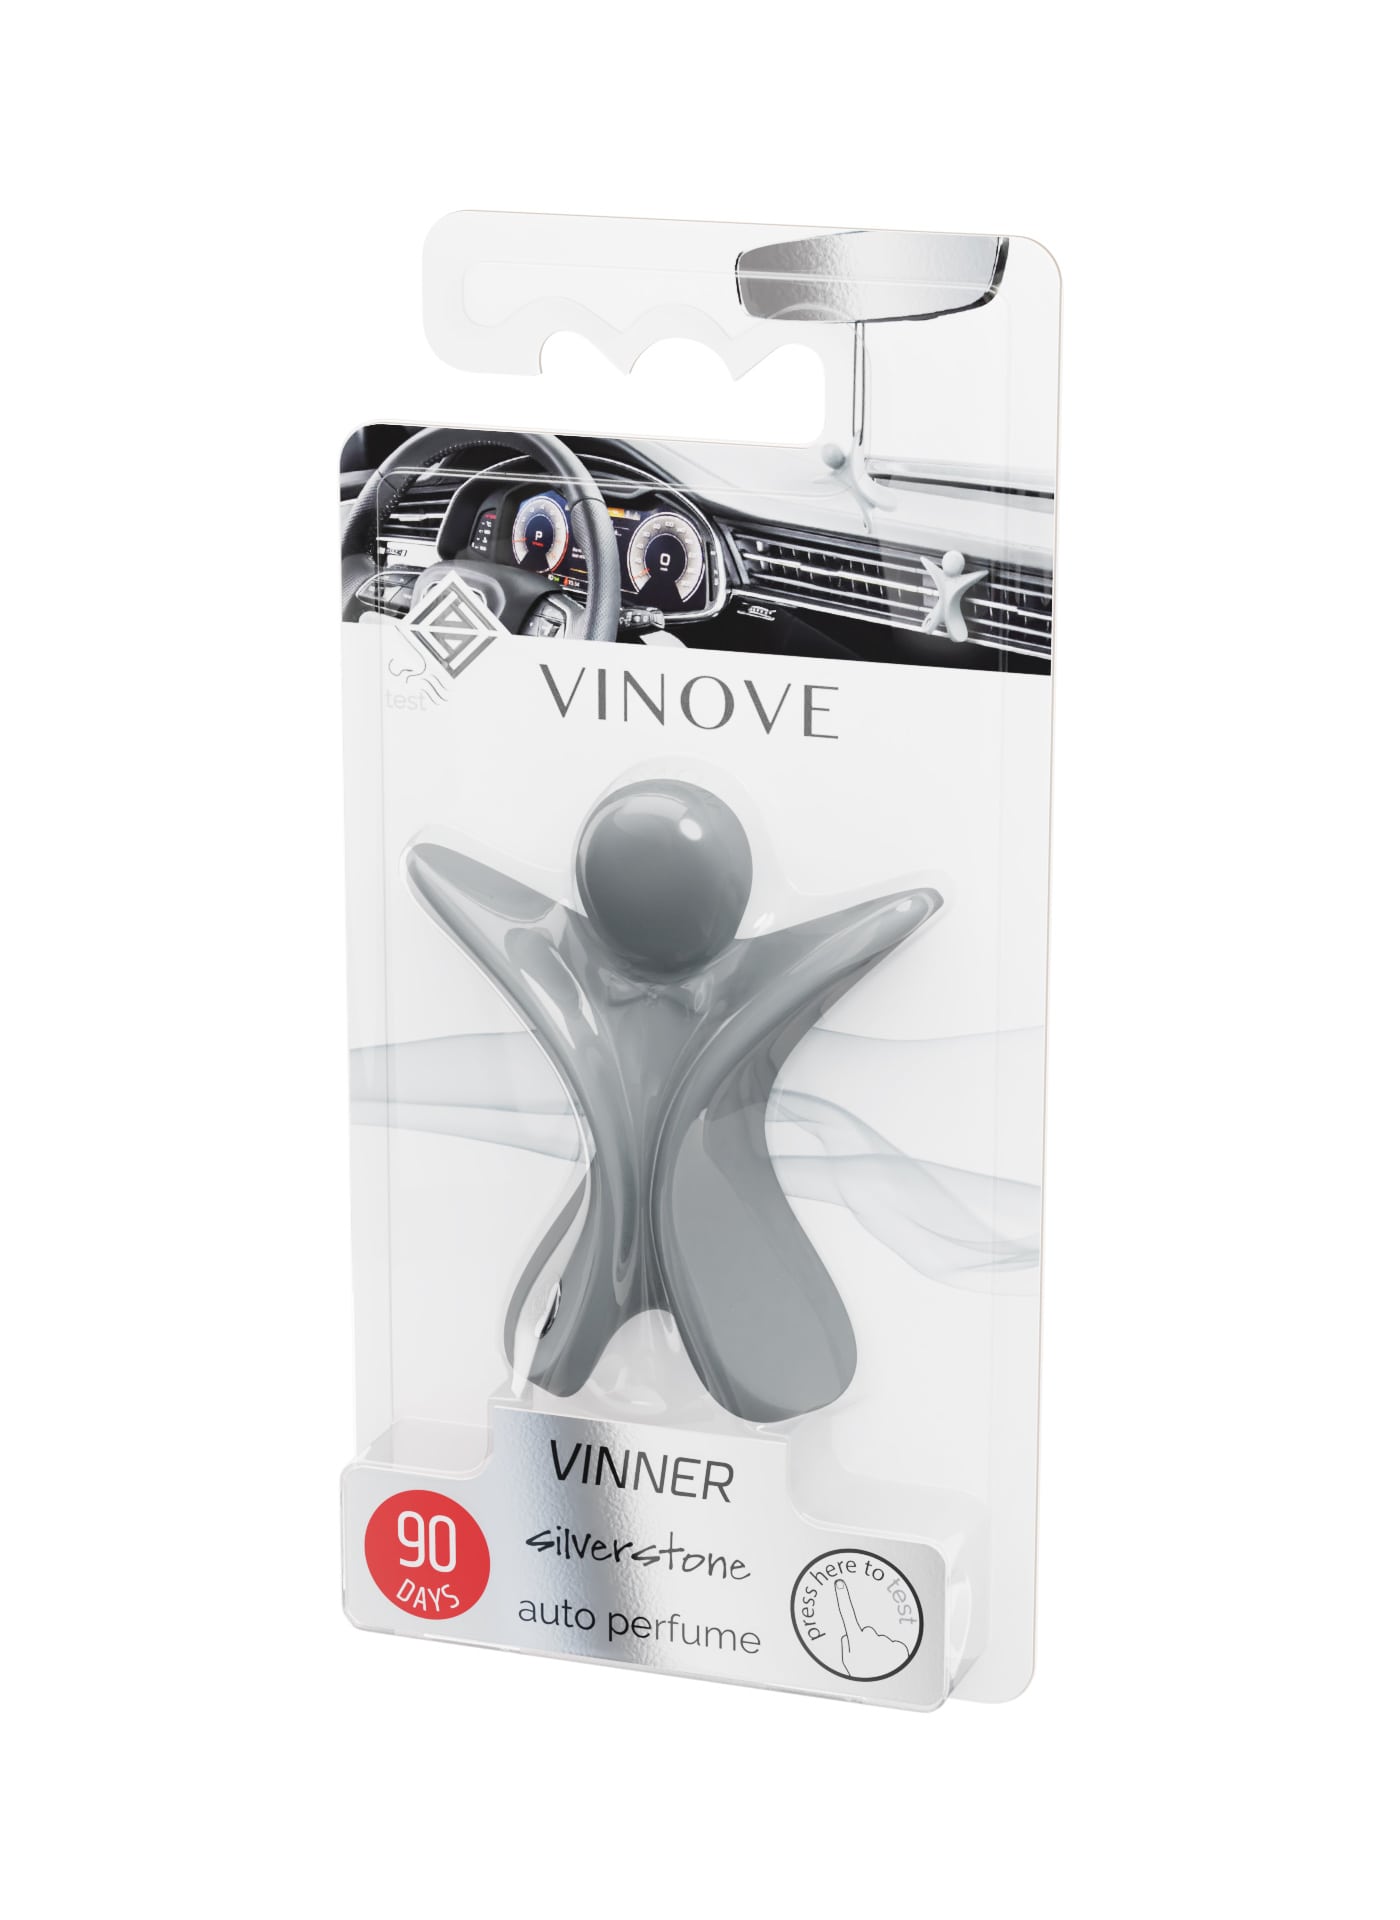 VINOVE silverstone VINNER (v14-01)